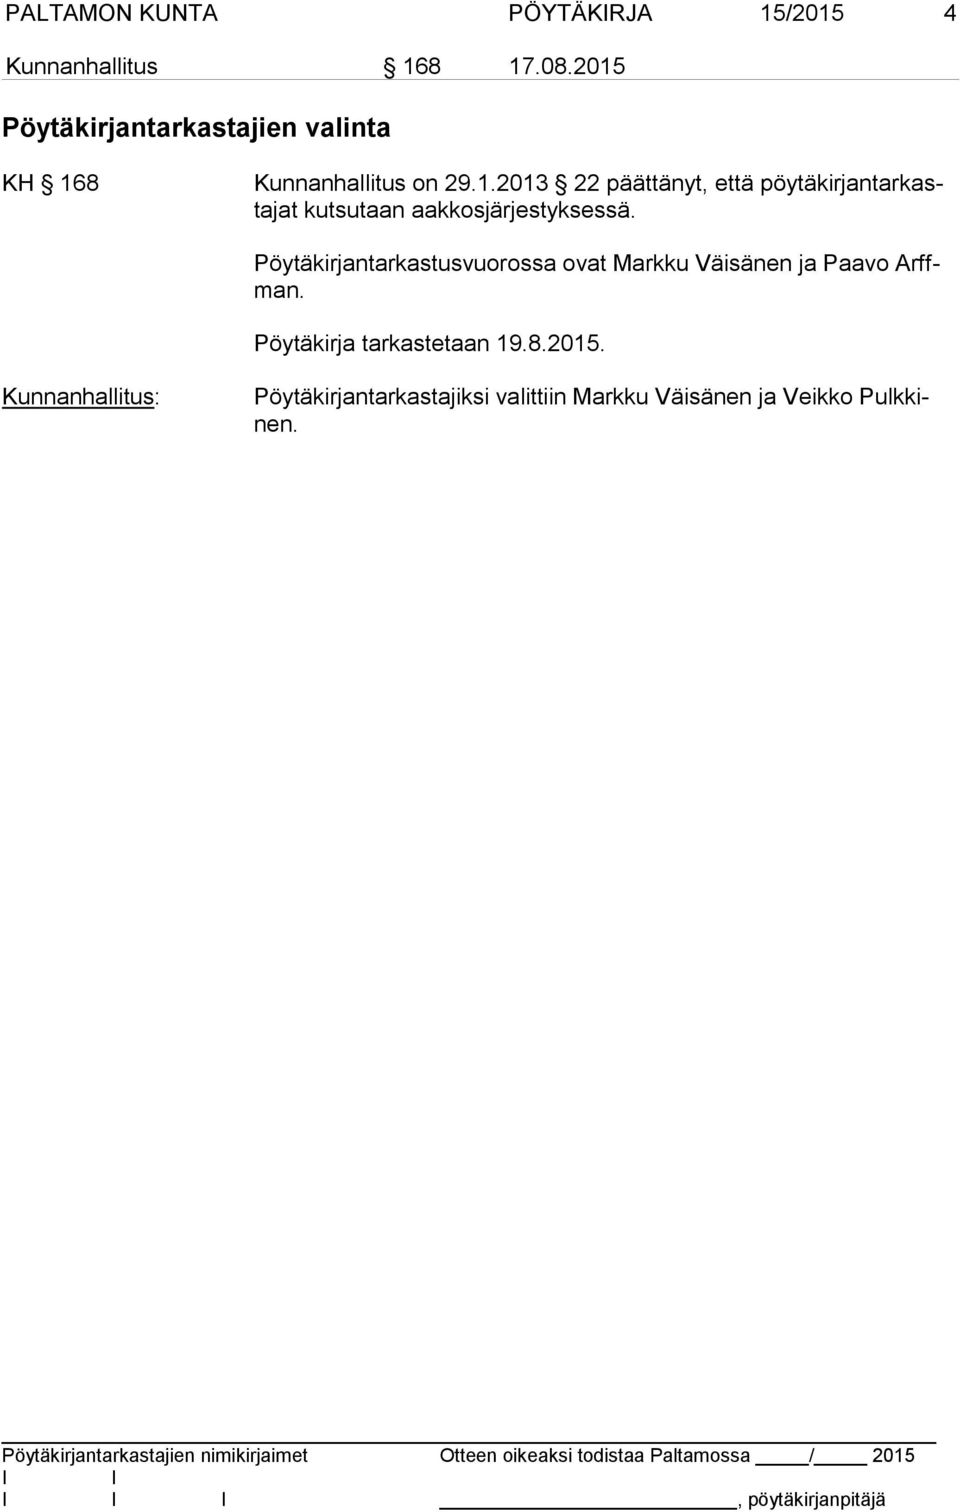 Pöytäkirjantarkastusvuorossa ovat Markku Väisänen ja Paavo Arffman. Pöytäkirja tarkastetaan 19.8.2015.